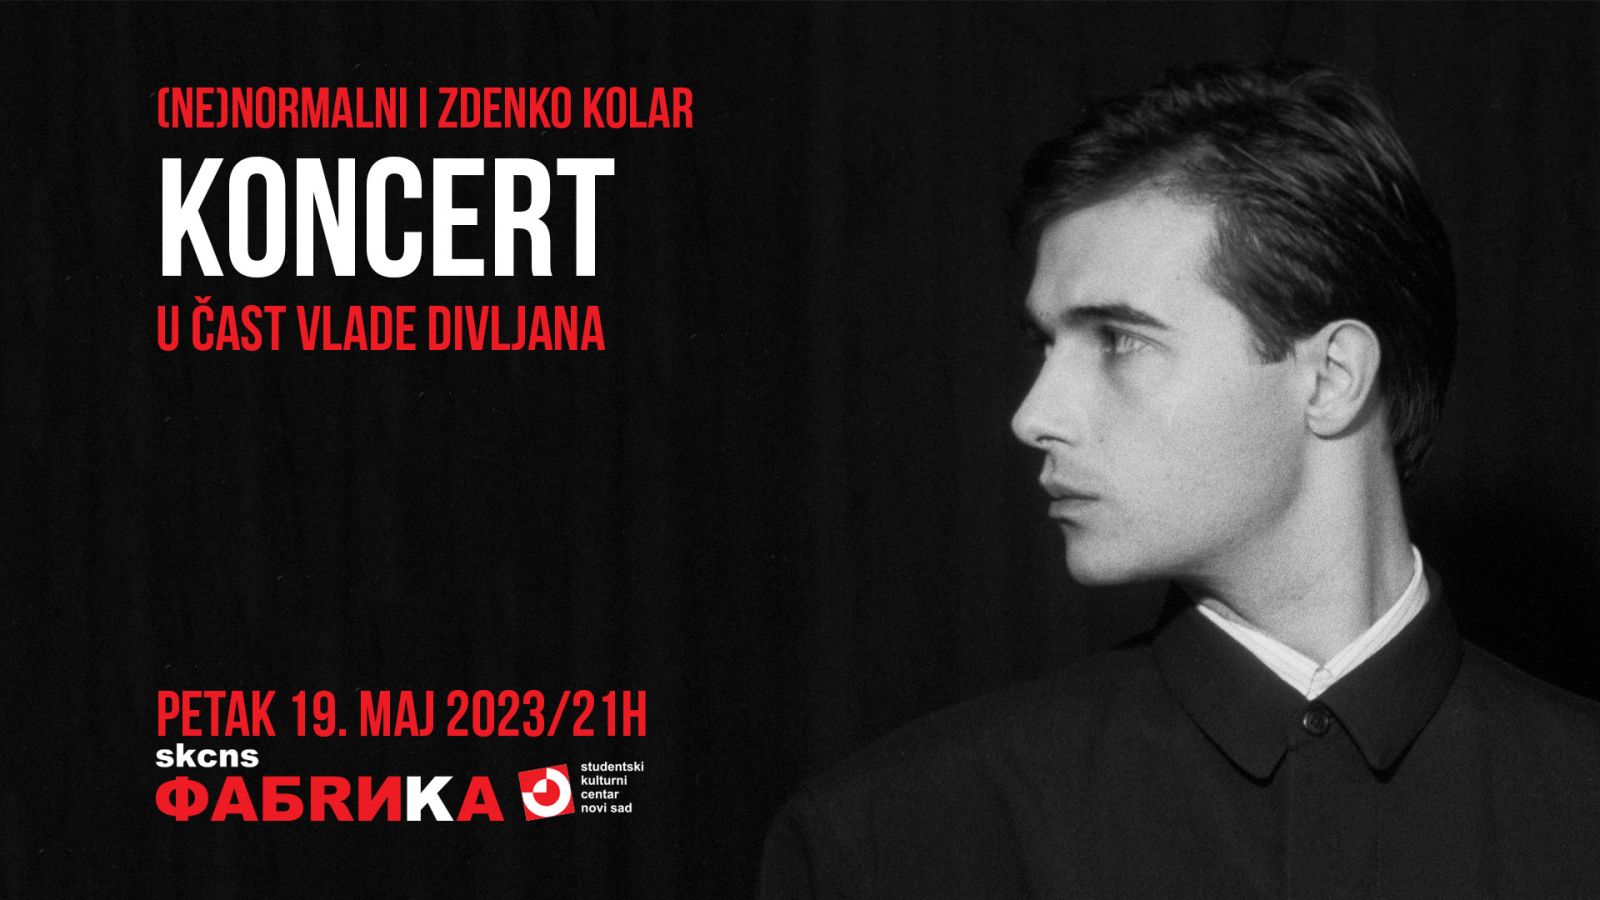 Koncert u čast Vlade Divljana: (ne)normalni & Zdenko Kolar